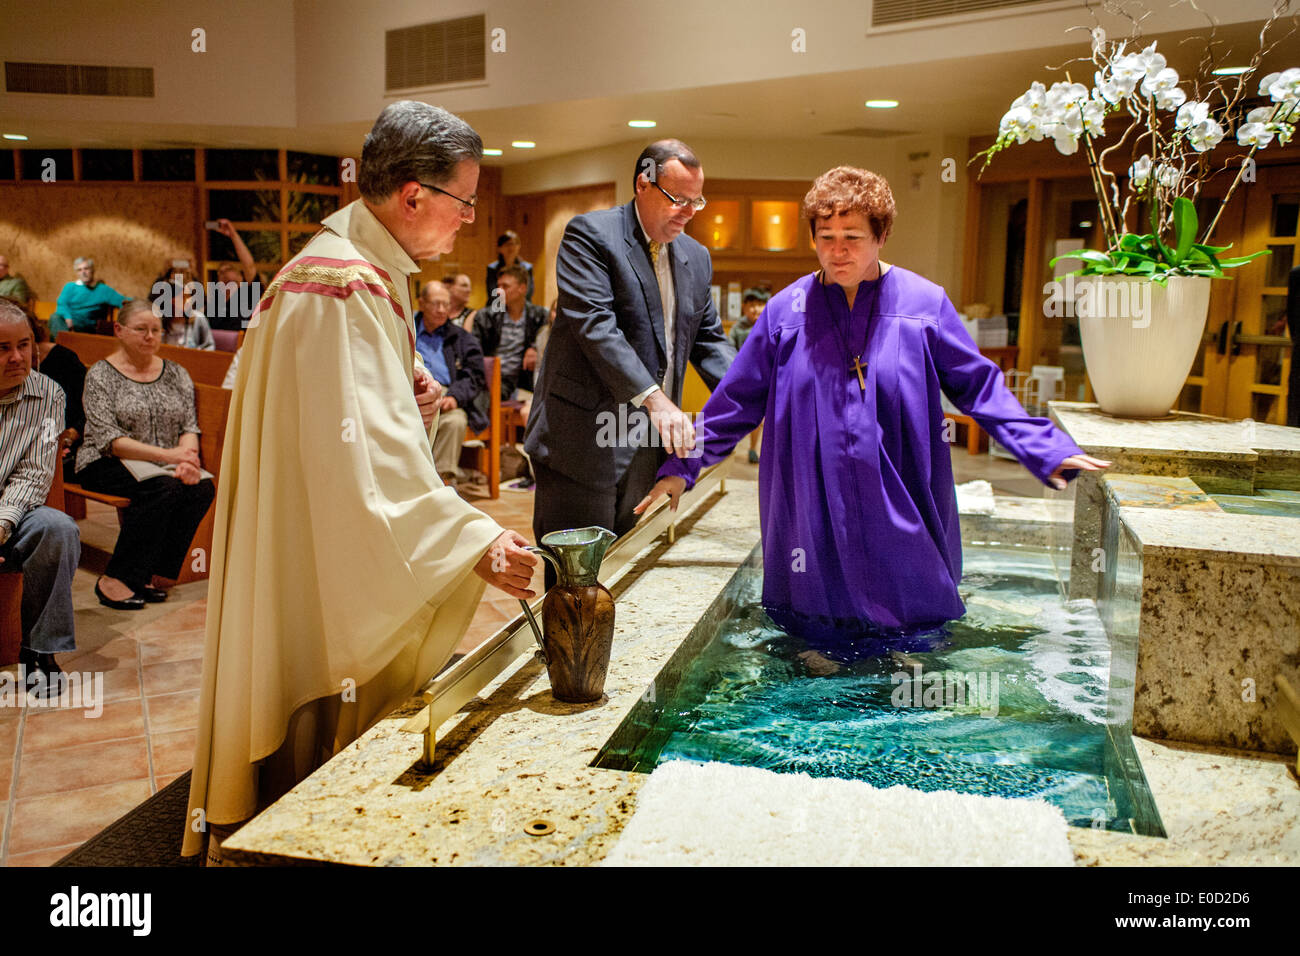 Die Pfarrer von St. Timothy katholische Kirche, Laguna Niguel, CA, bereitet einen Katechumenen oder eine Person, ein Katholik geworden zu taufen. Hinweis: Taufbecken und Sponsor der Katechumenen. Stockfoto